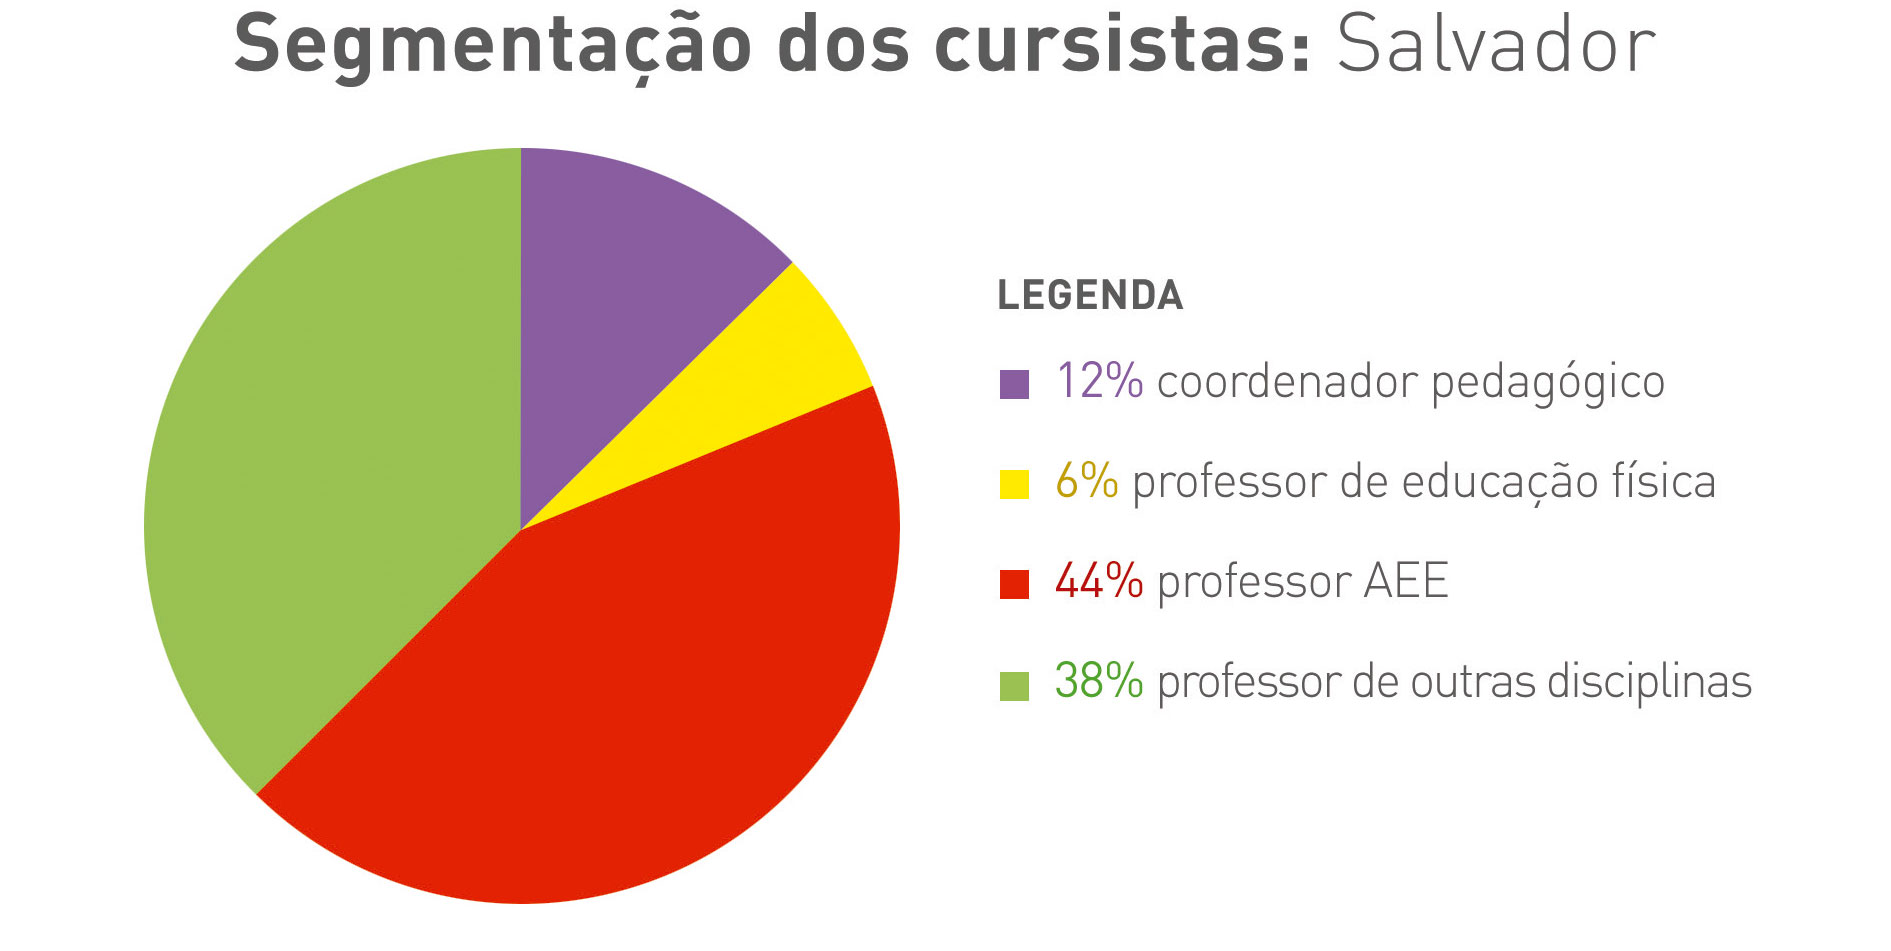 Gráfico colorido em formato de pizza com segmentação de cursistas no Salvador. Legenda: 12% - coordenador pedagógico; 6% - professor de educação física; 44% - professor de aee; 38% - professor de outras disciplinas.